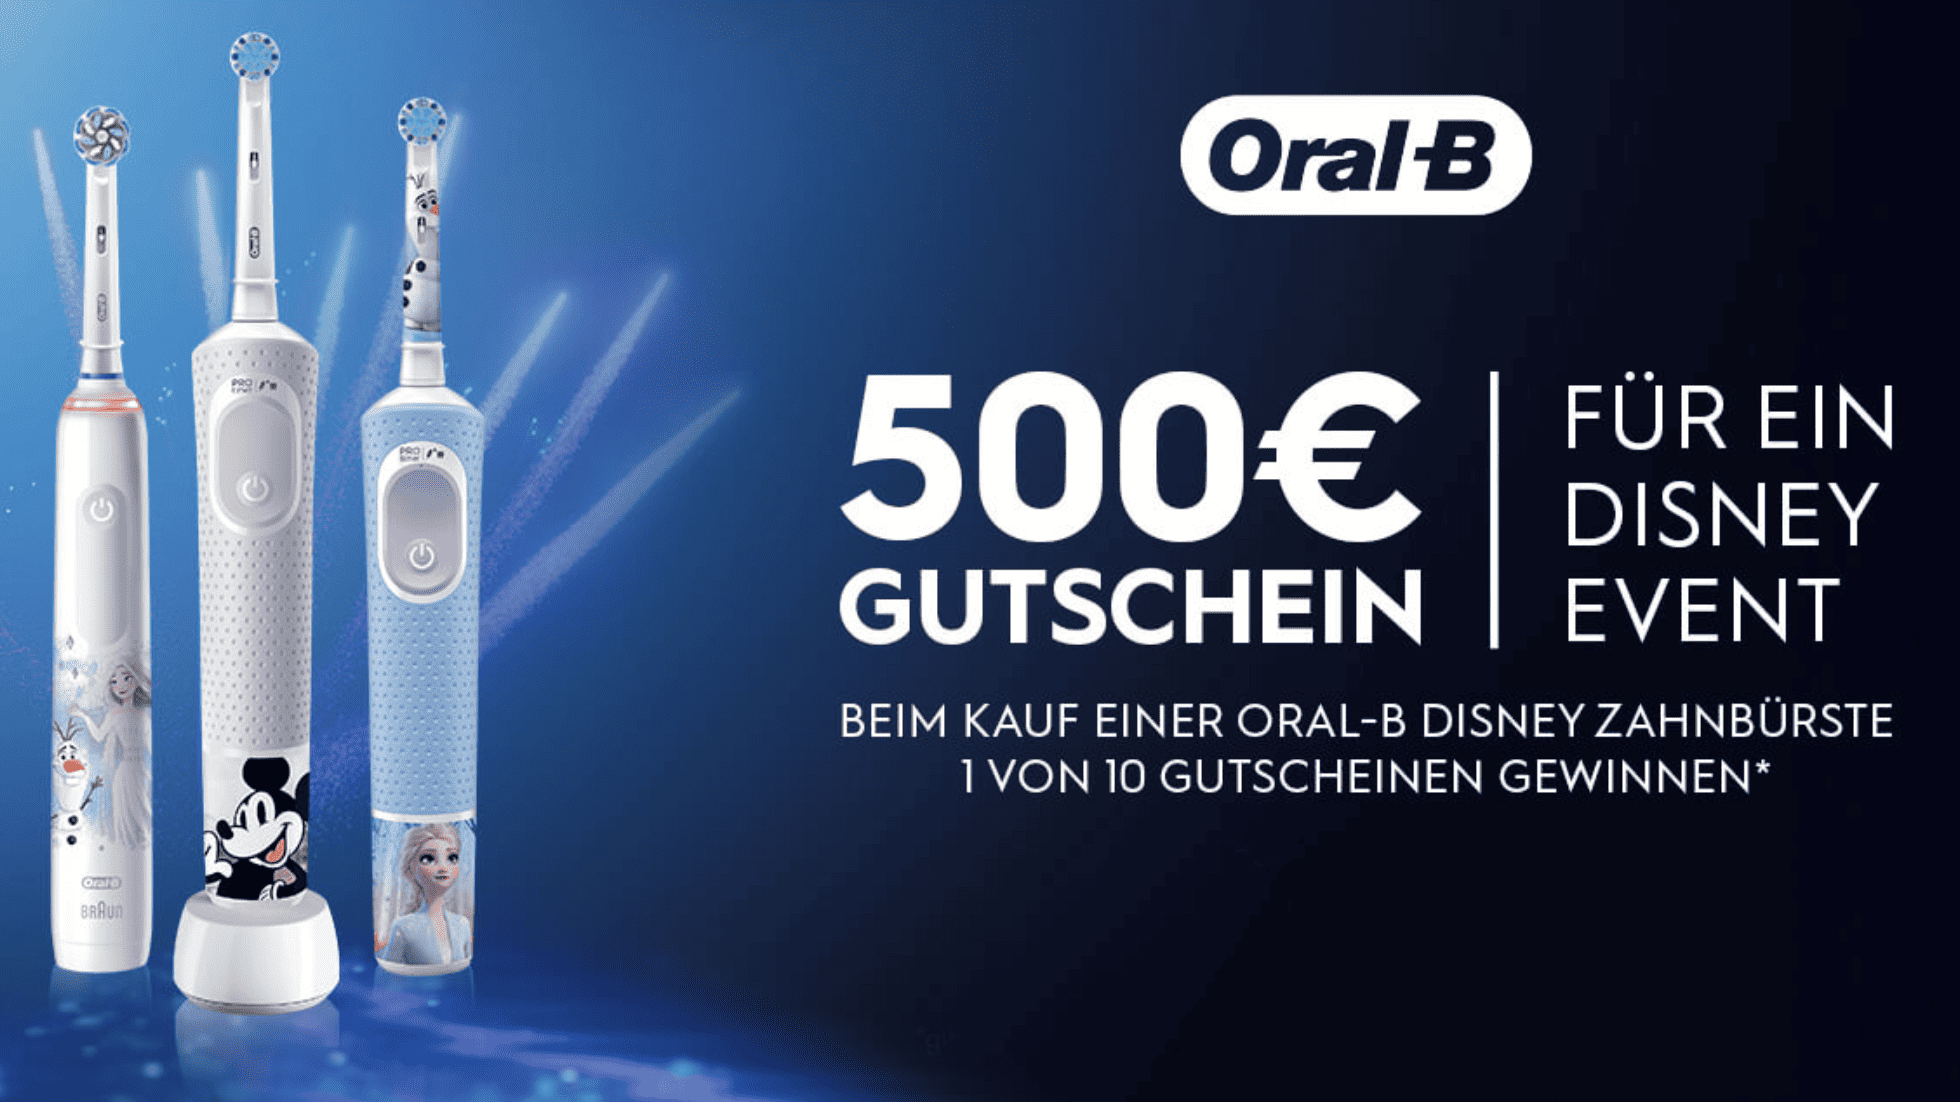 case_Oral B_500-Euro-Gutschein für Disney-Event gewinnen